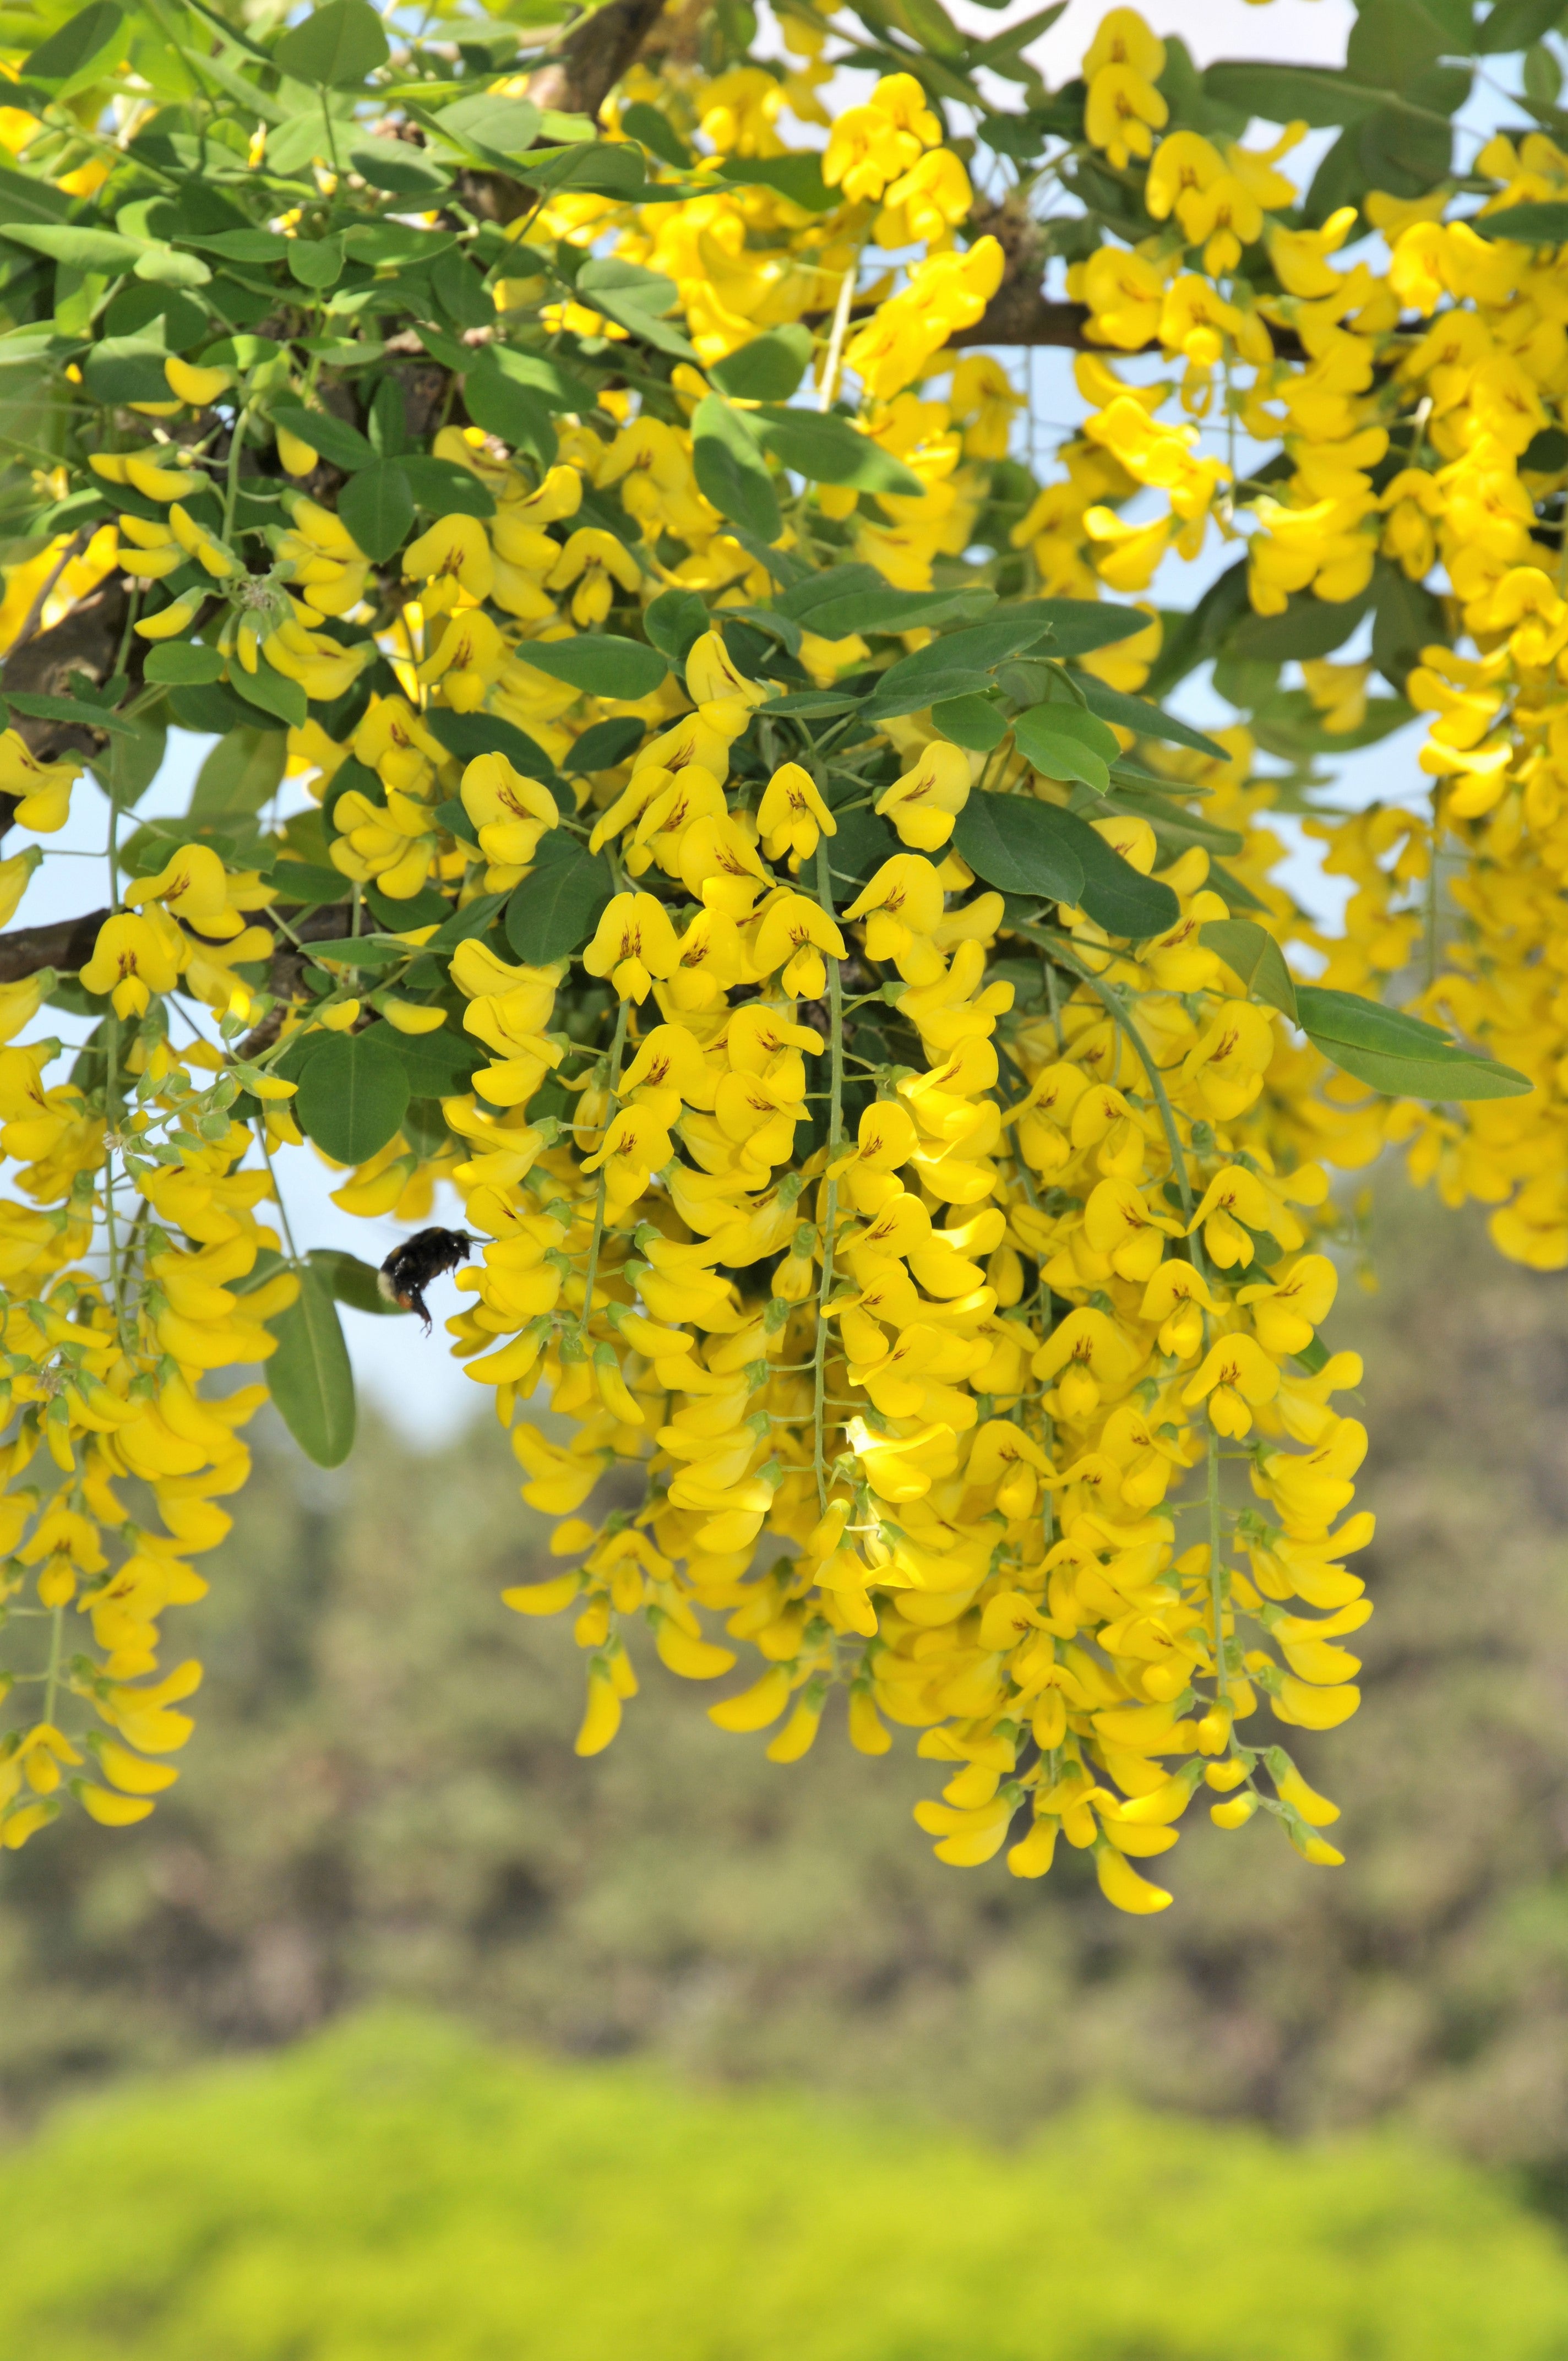 25 SIBERIAN PEASHRUB Caragana Arborescens Peatree Yellow Flower Legume Vegetable Seeds - image 1 of 11